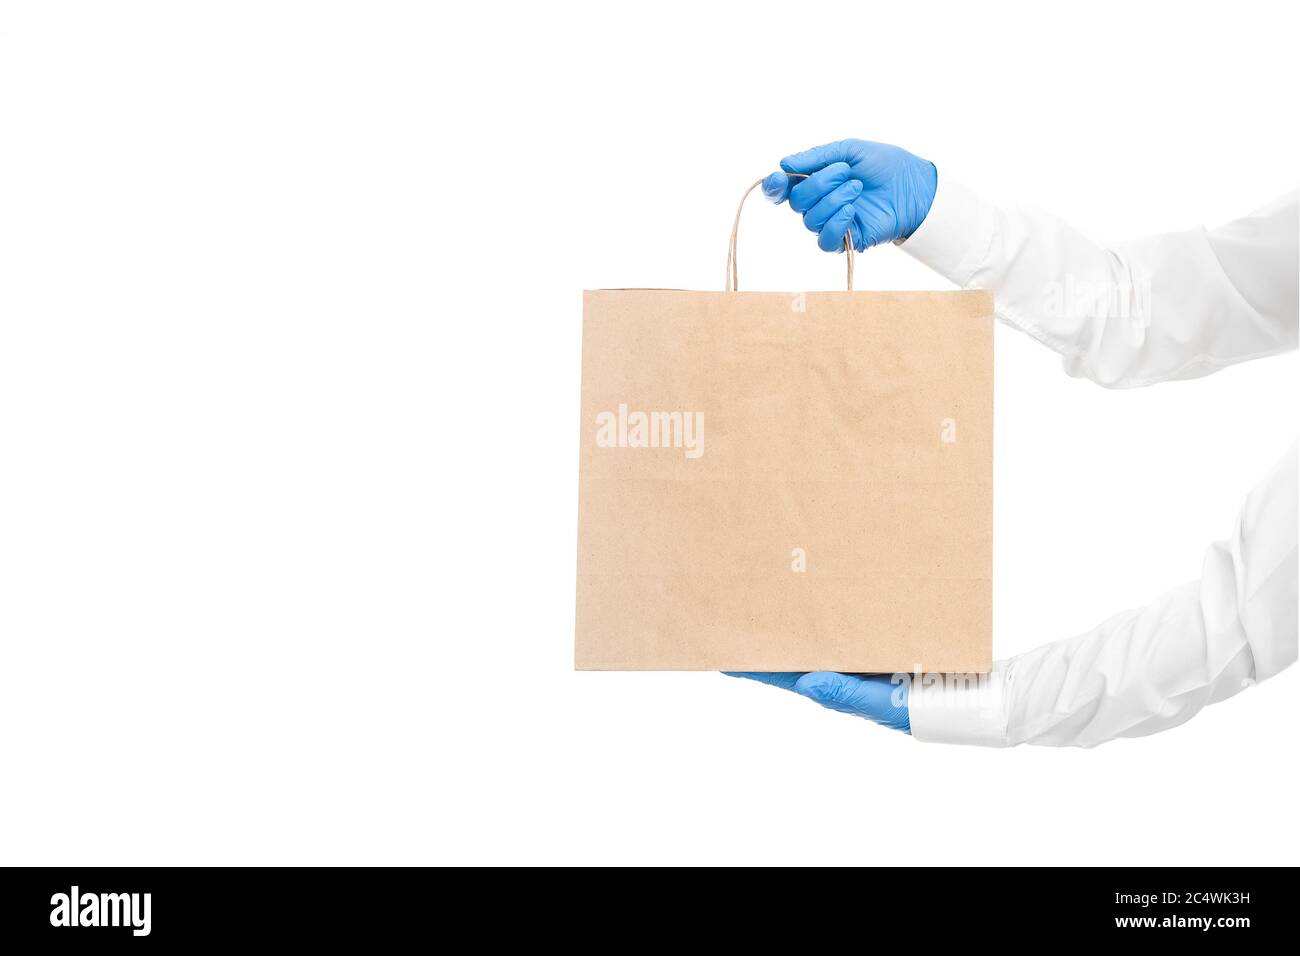 mains dans des manches blanches dans des gants stériles de messagerie pour la livraison sûre d'aliments dans un emballage écologique pendant la quarantaine du coronavirus covid-19 pa Banque D'Images